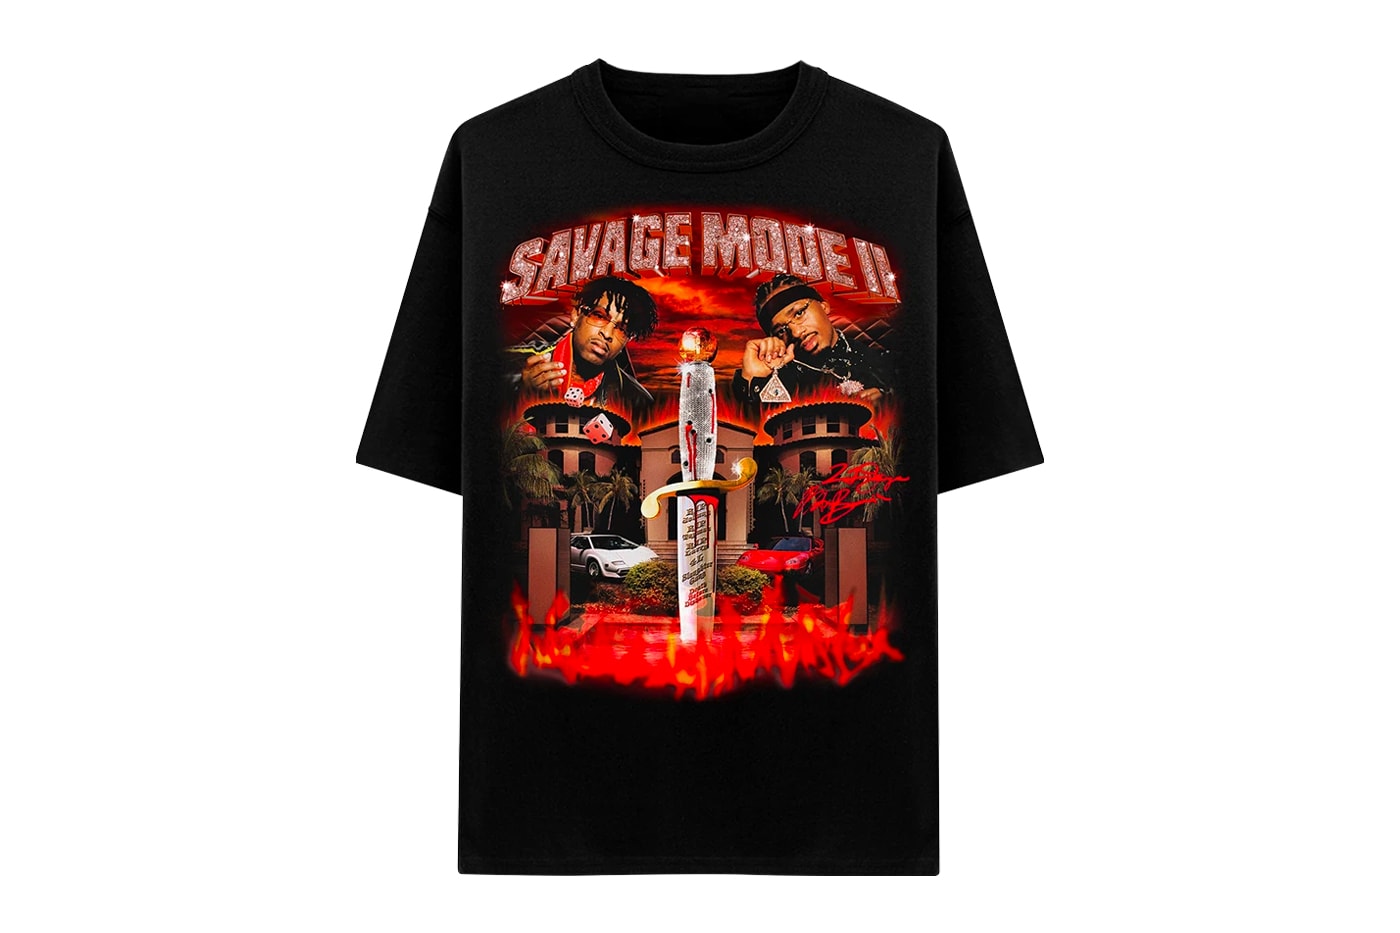 21 Savage & Metro Boomin', Savage Mode II